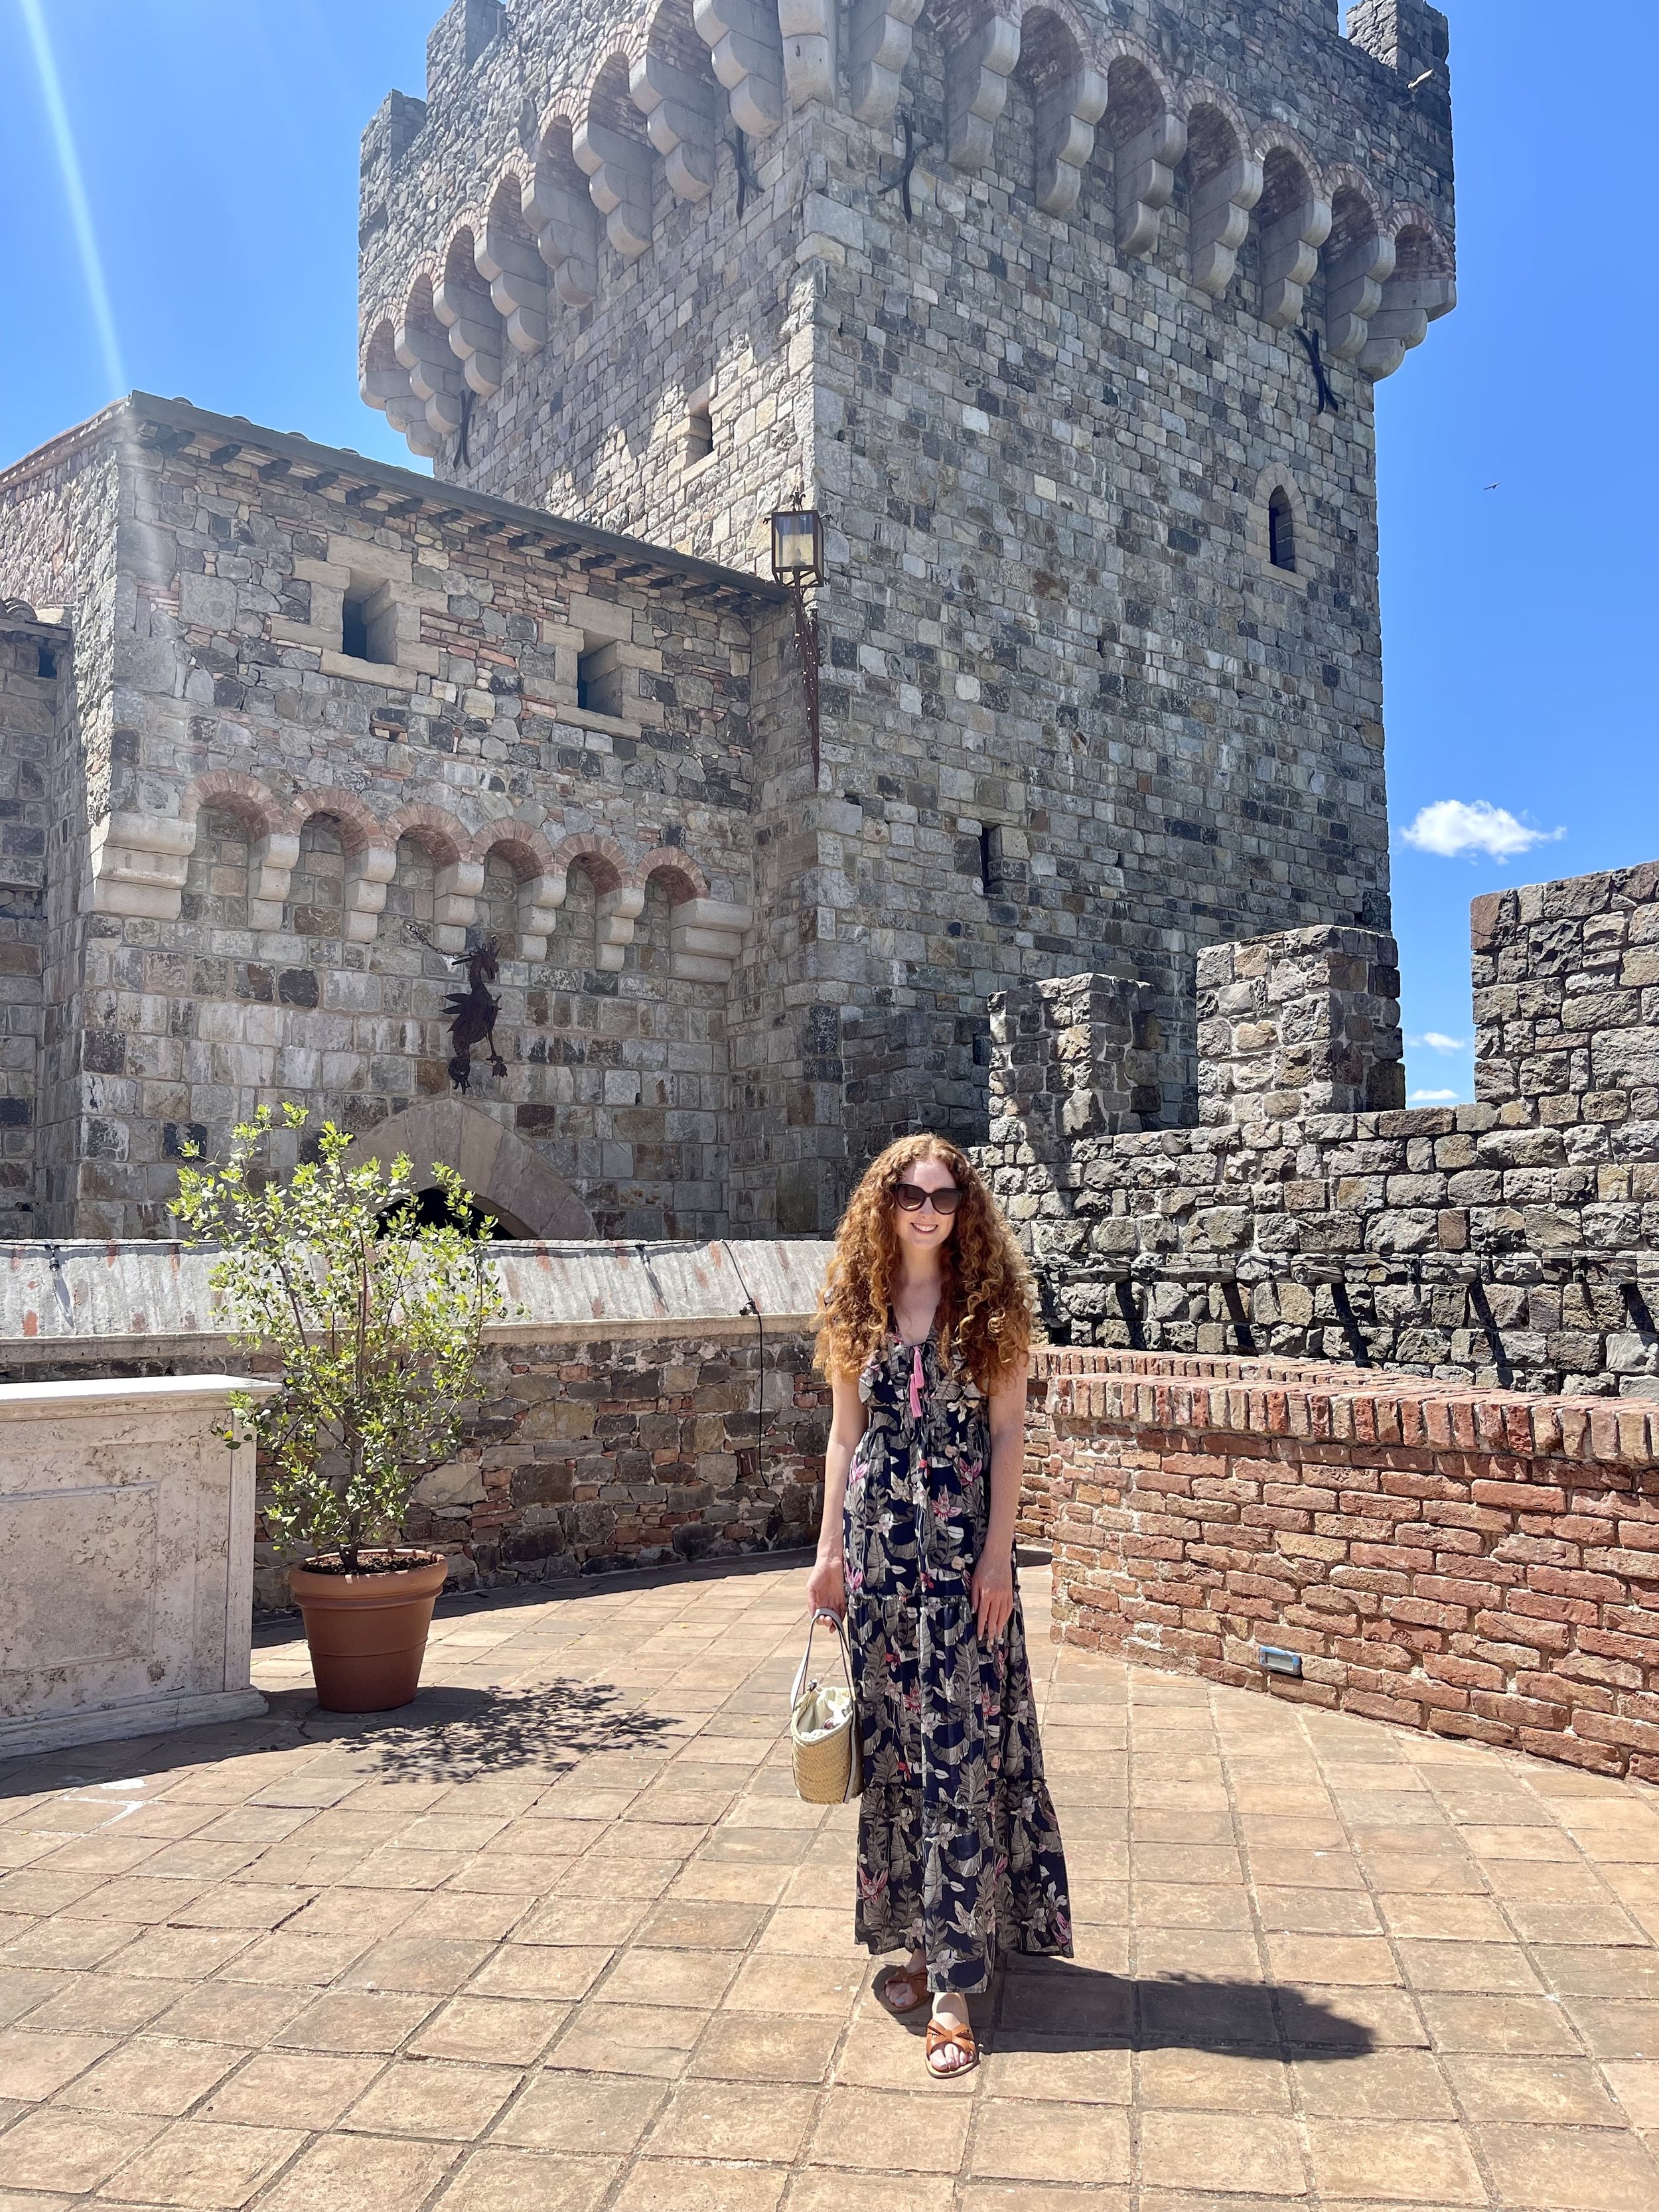 Is Castello di Amorosa open?